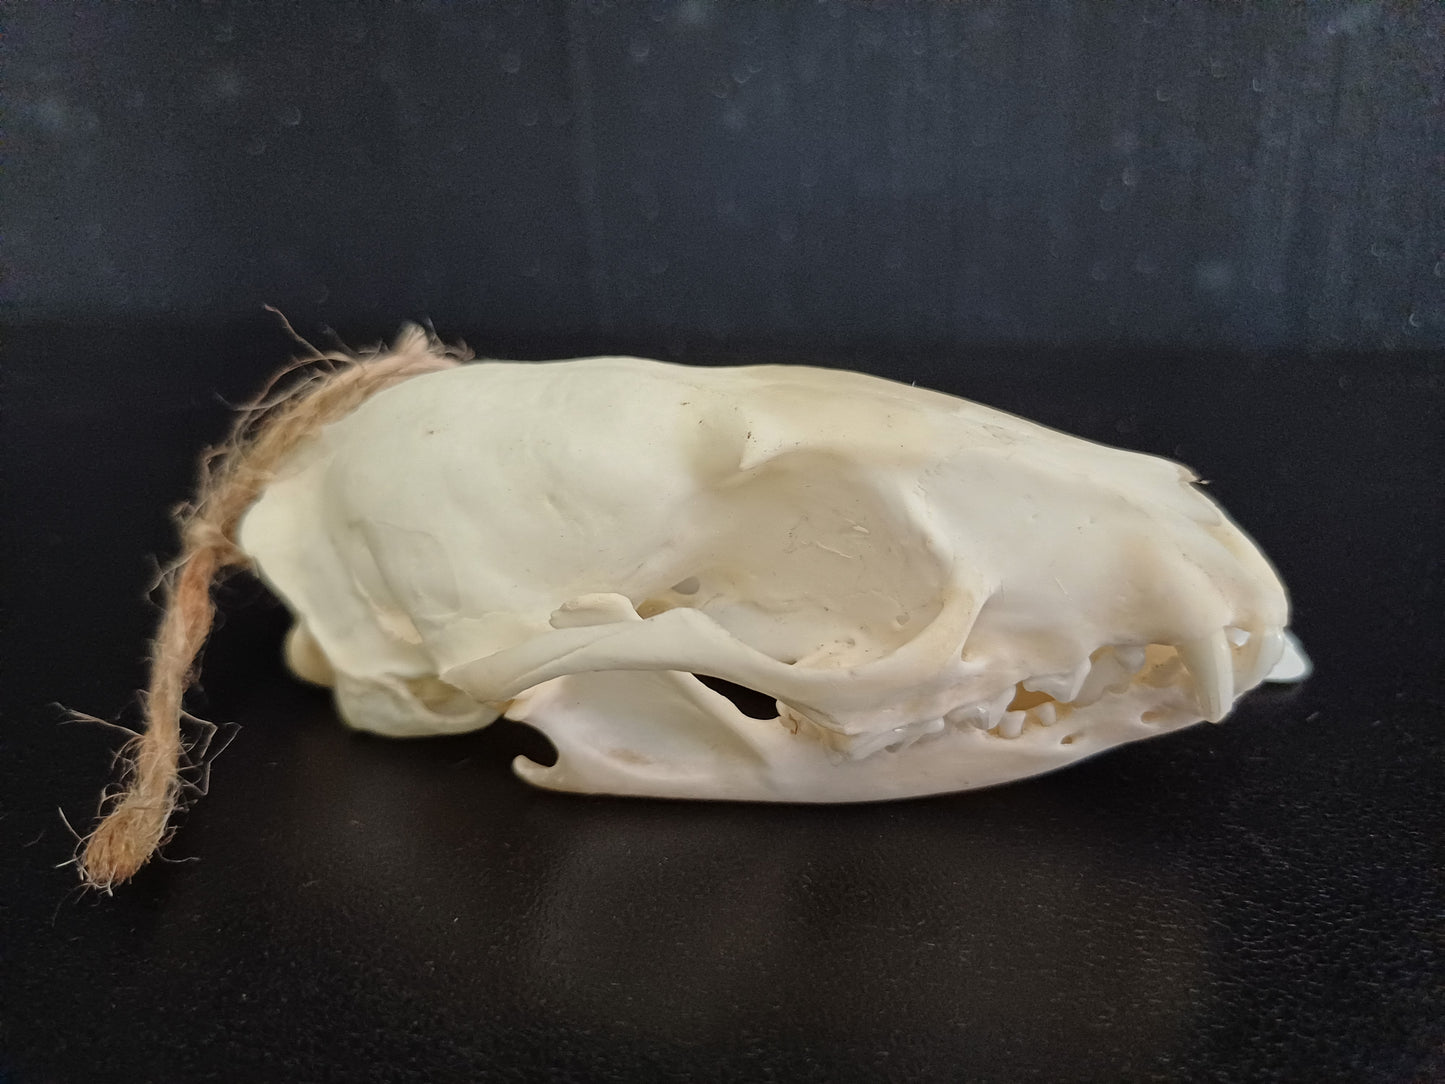 Common Genet skull